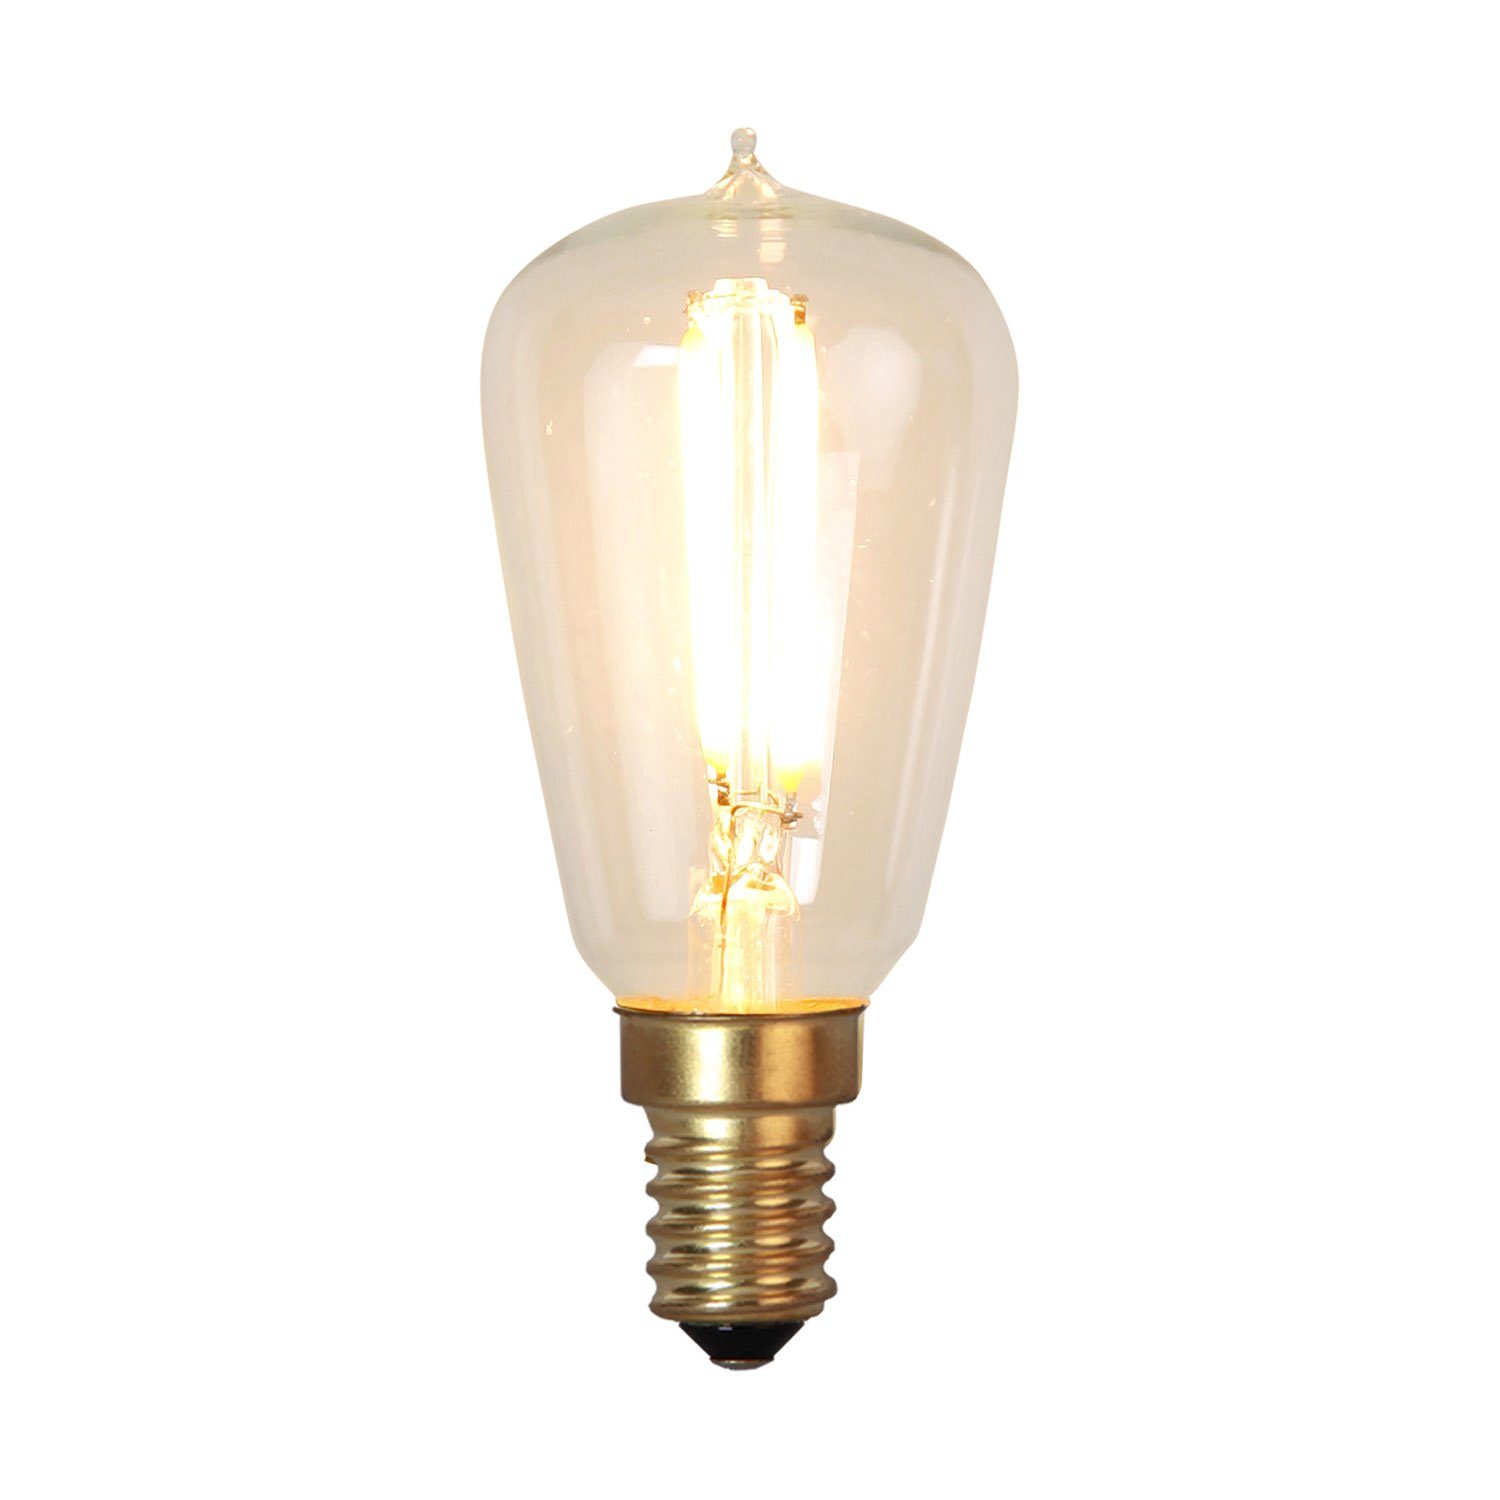 LED glödlampa till Artwoods lampor.